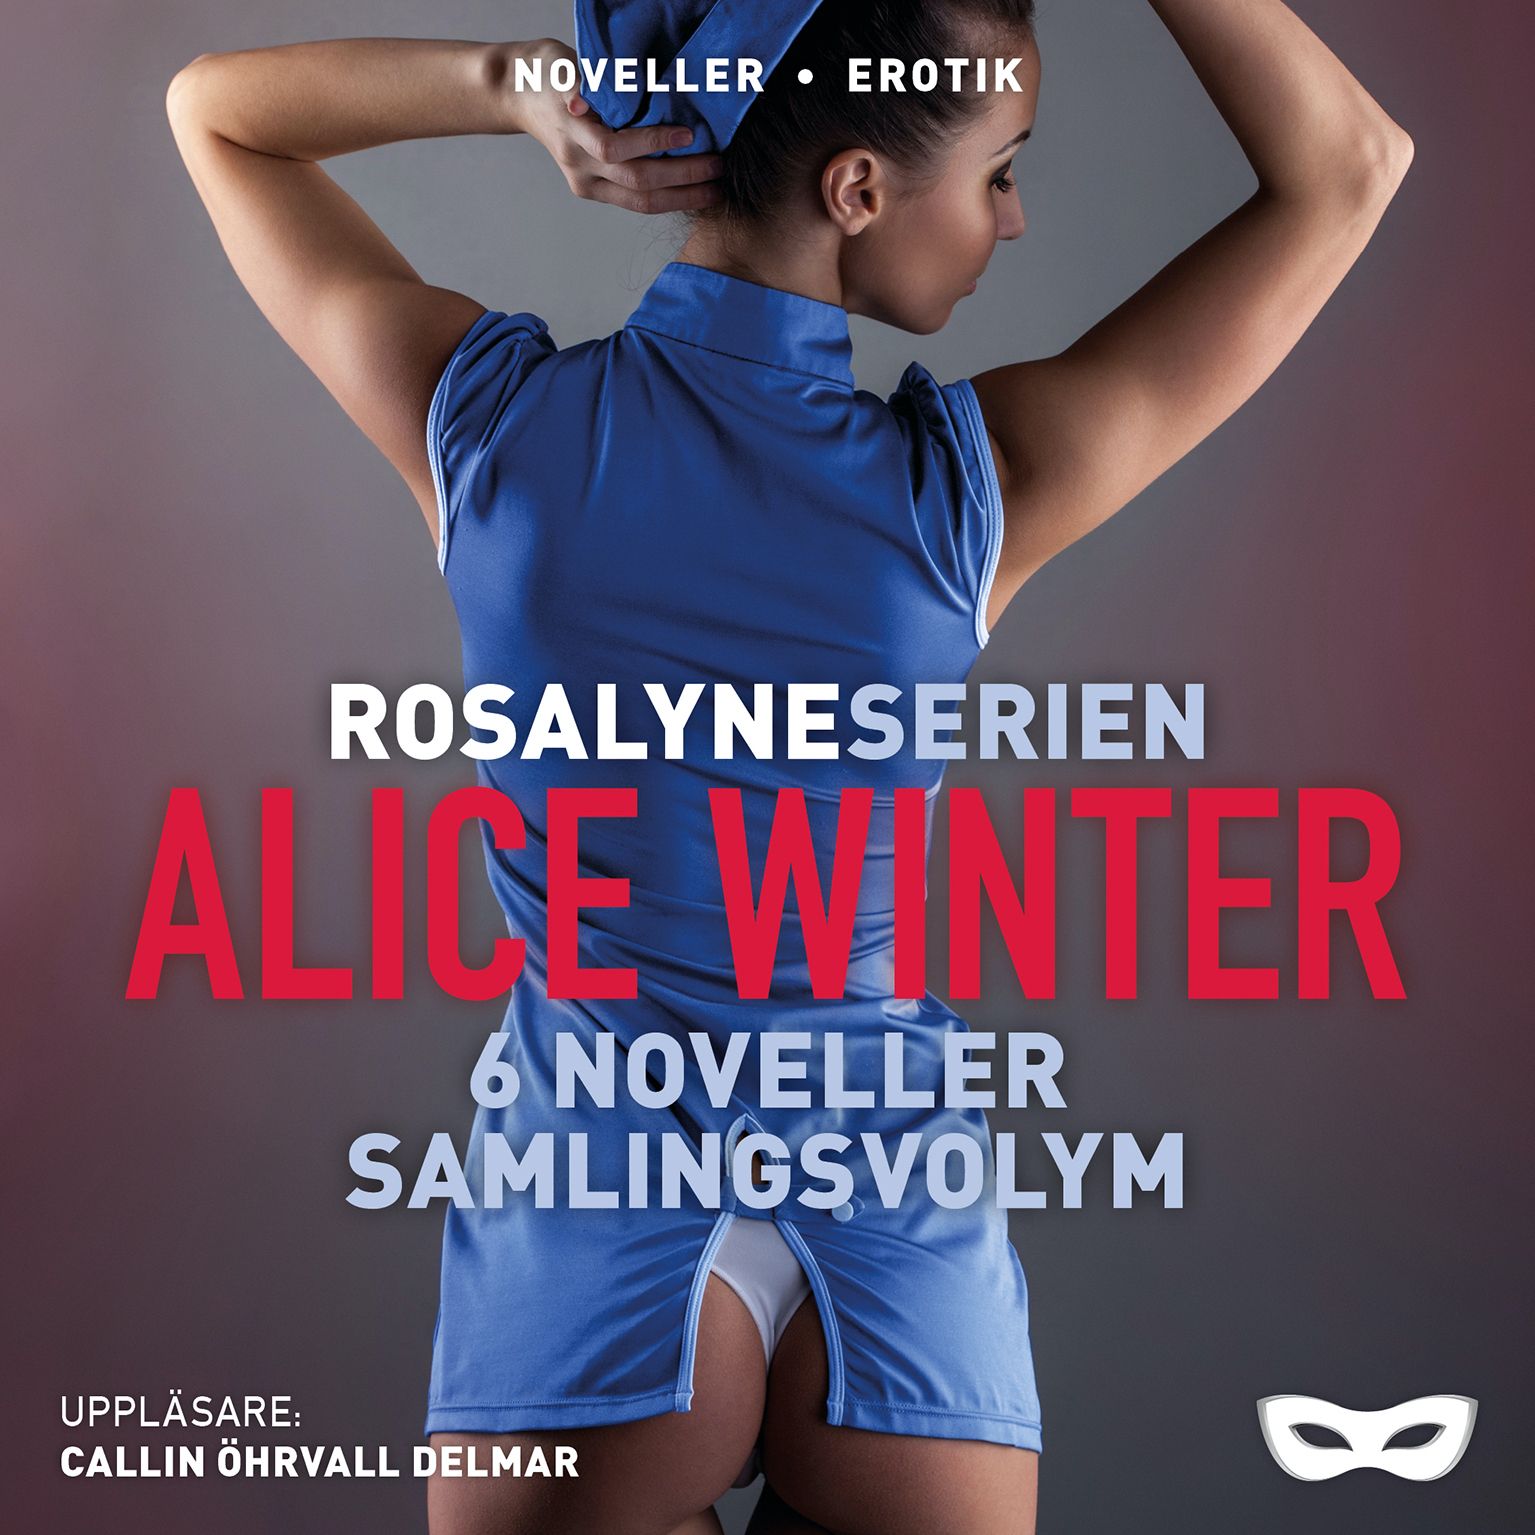 Rosalyneserien, ljudbok av Alice Winter